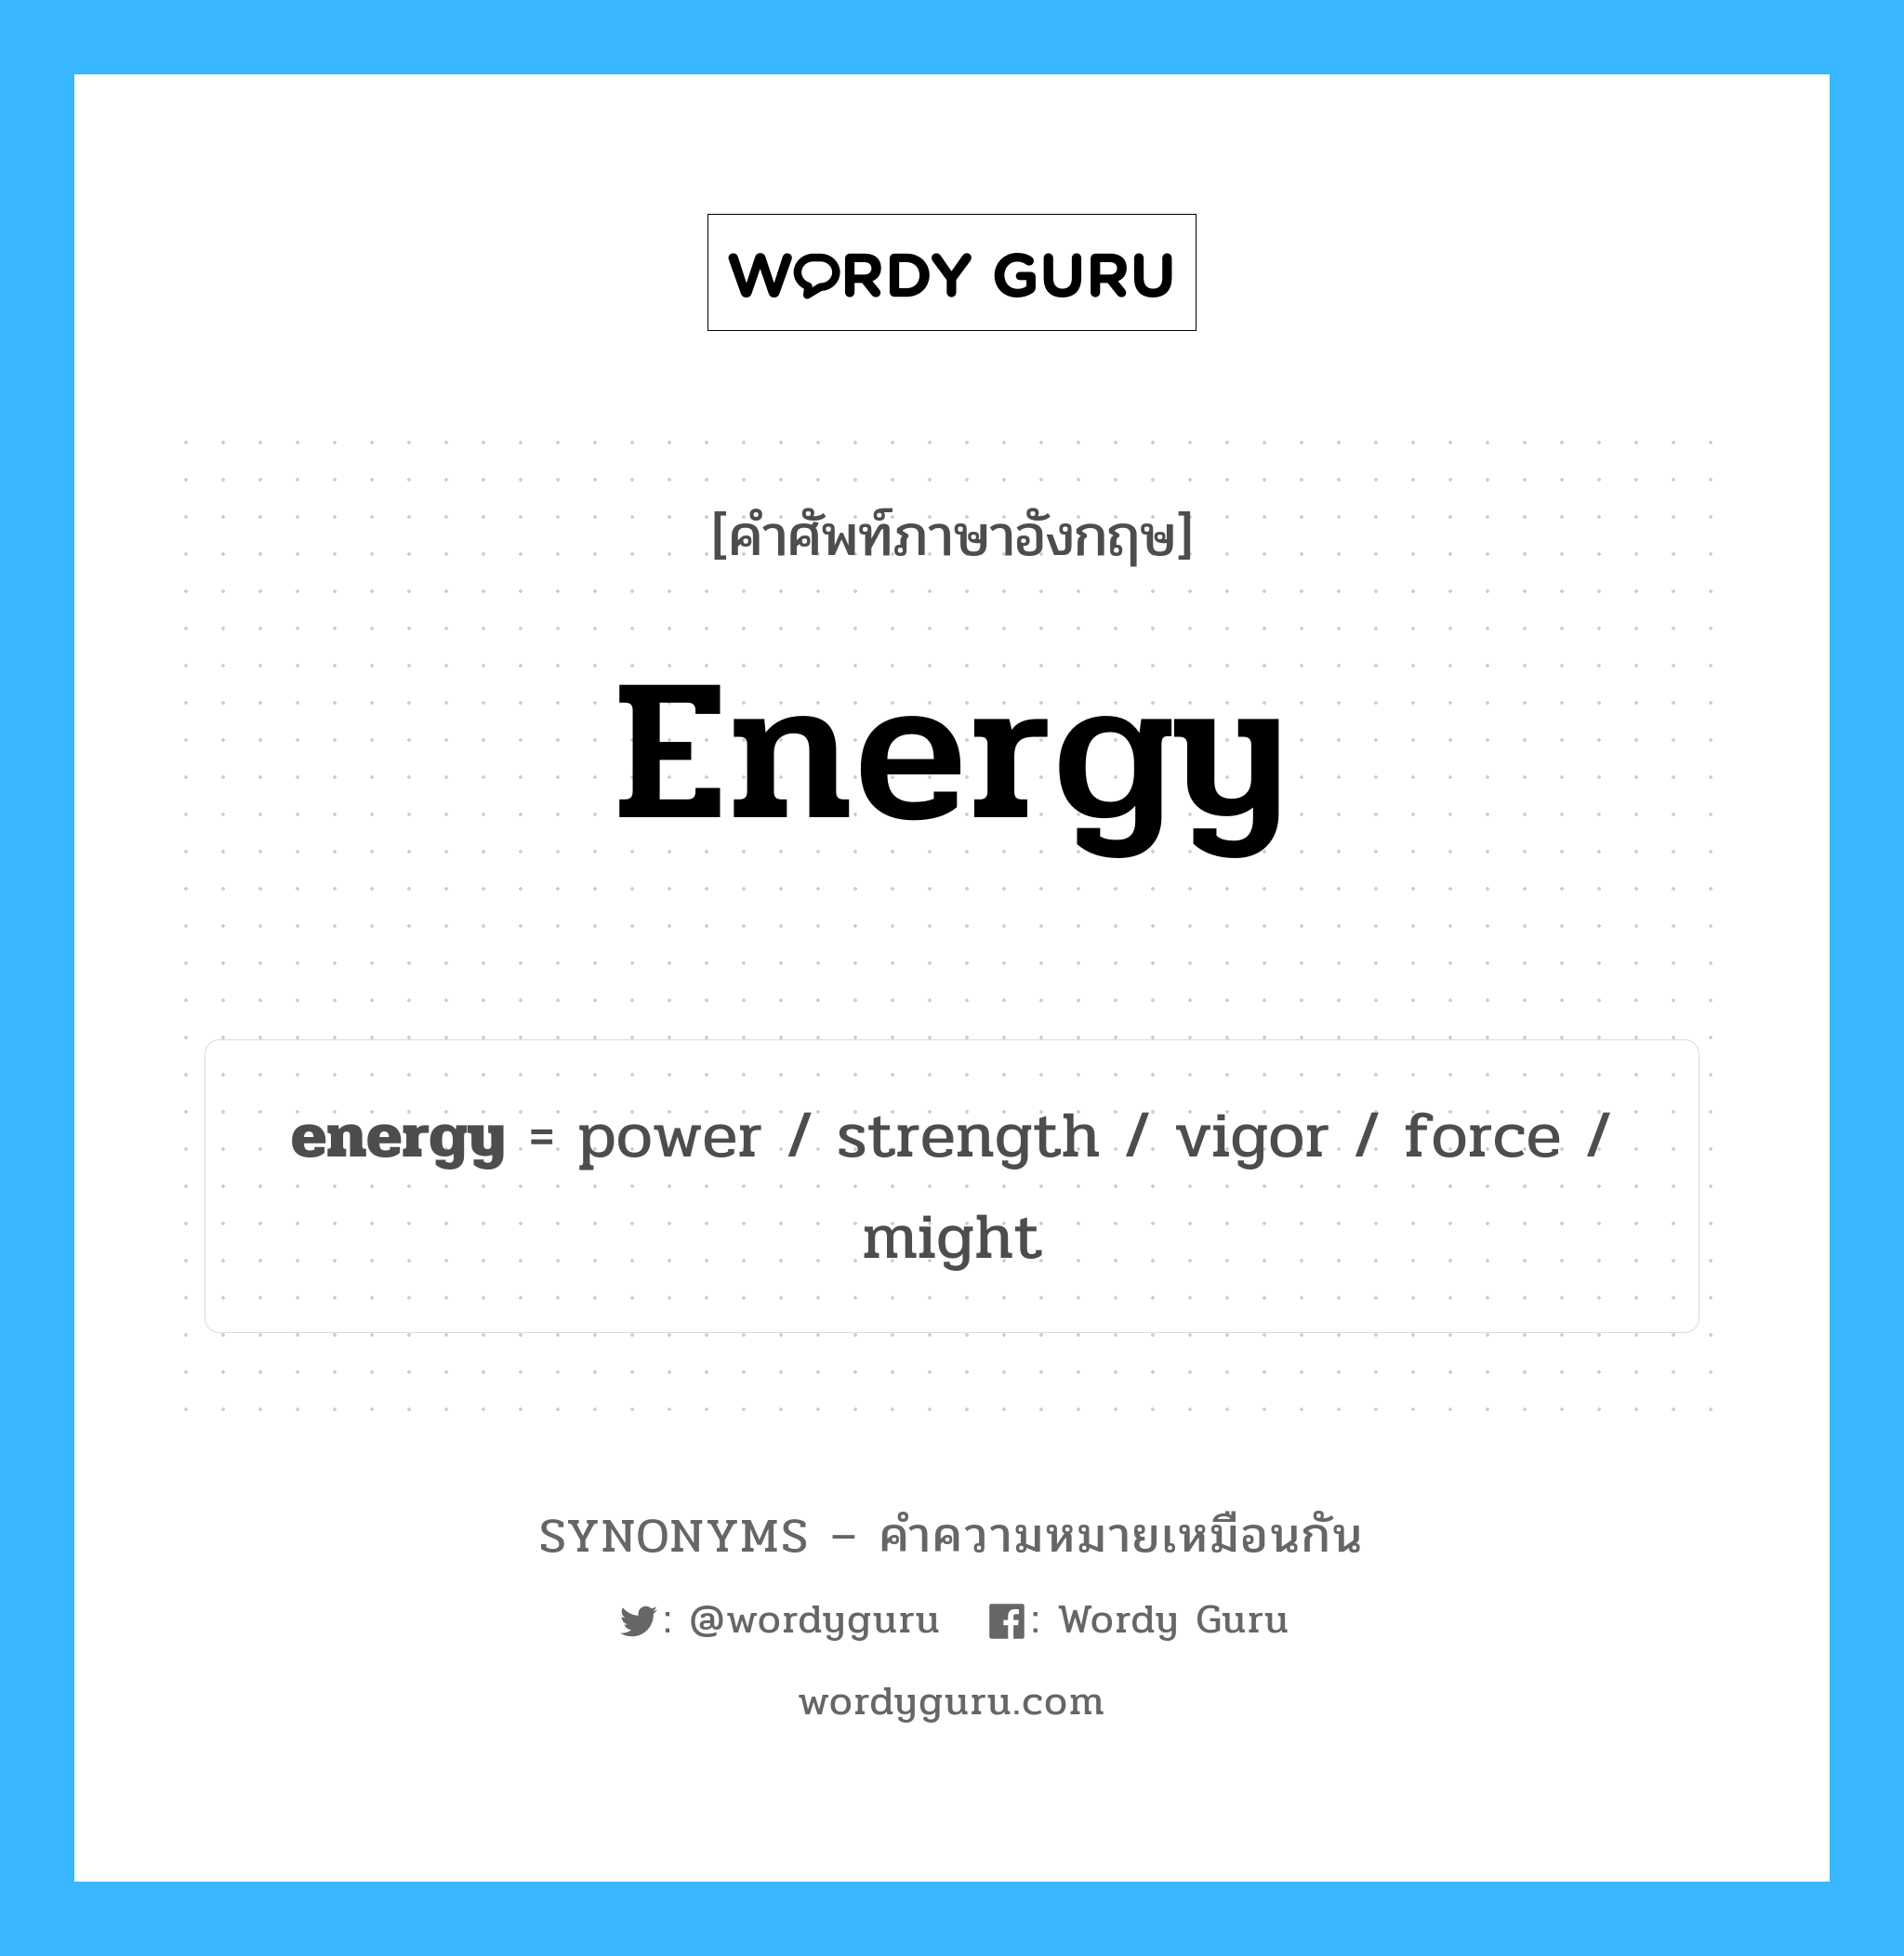 vigor เป็นหนึ่งใน strength และมีคำอื่น ๆ อีกดังนี้, คำศัพท์ภาษาอังกฤษ vigor ความหมายคล้ายกันกับ energy แปลว่า ความแข็งแรง หมวด energy